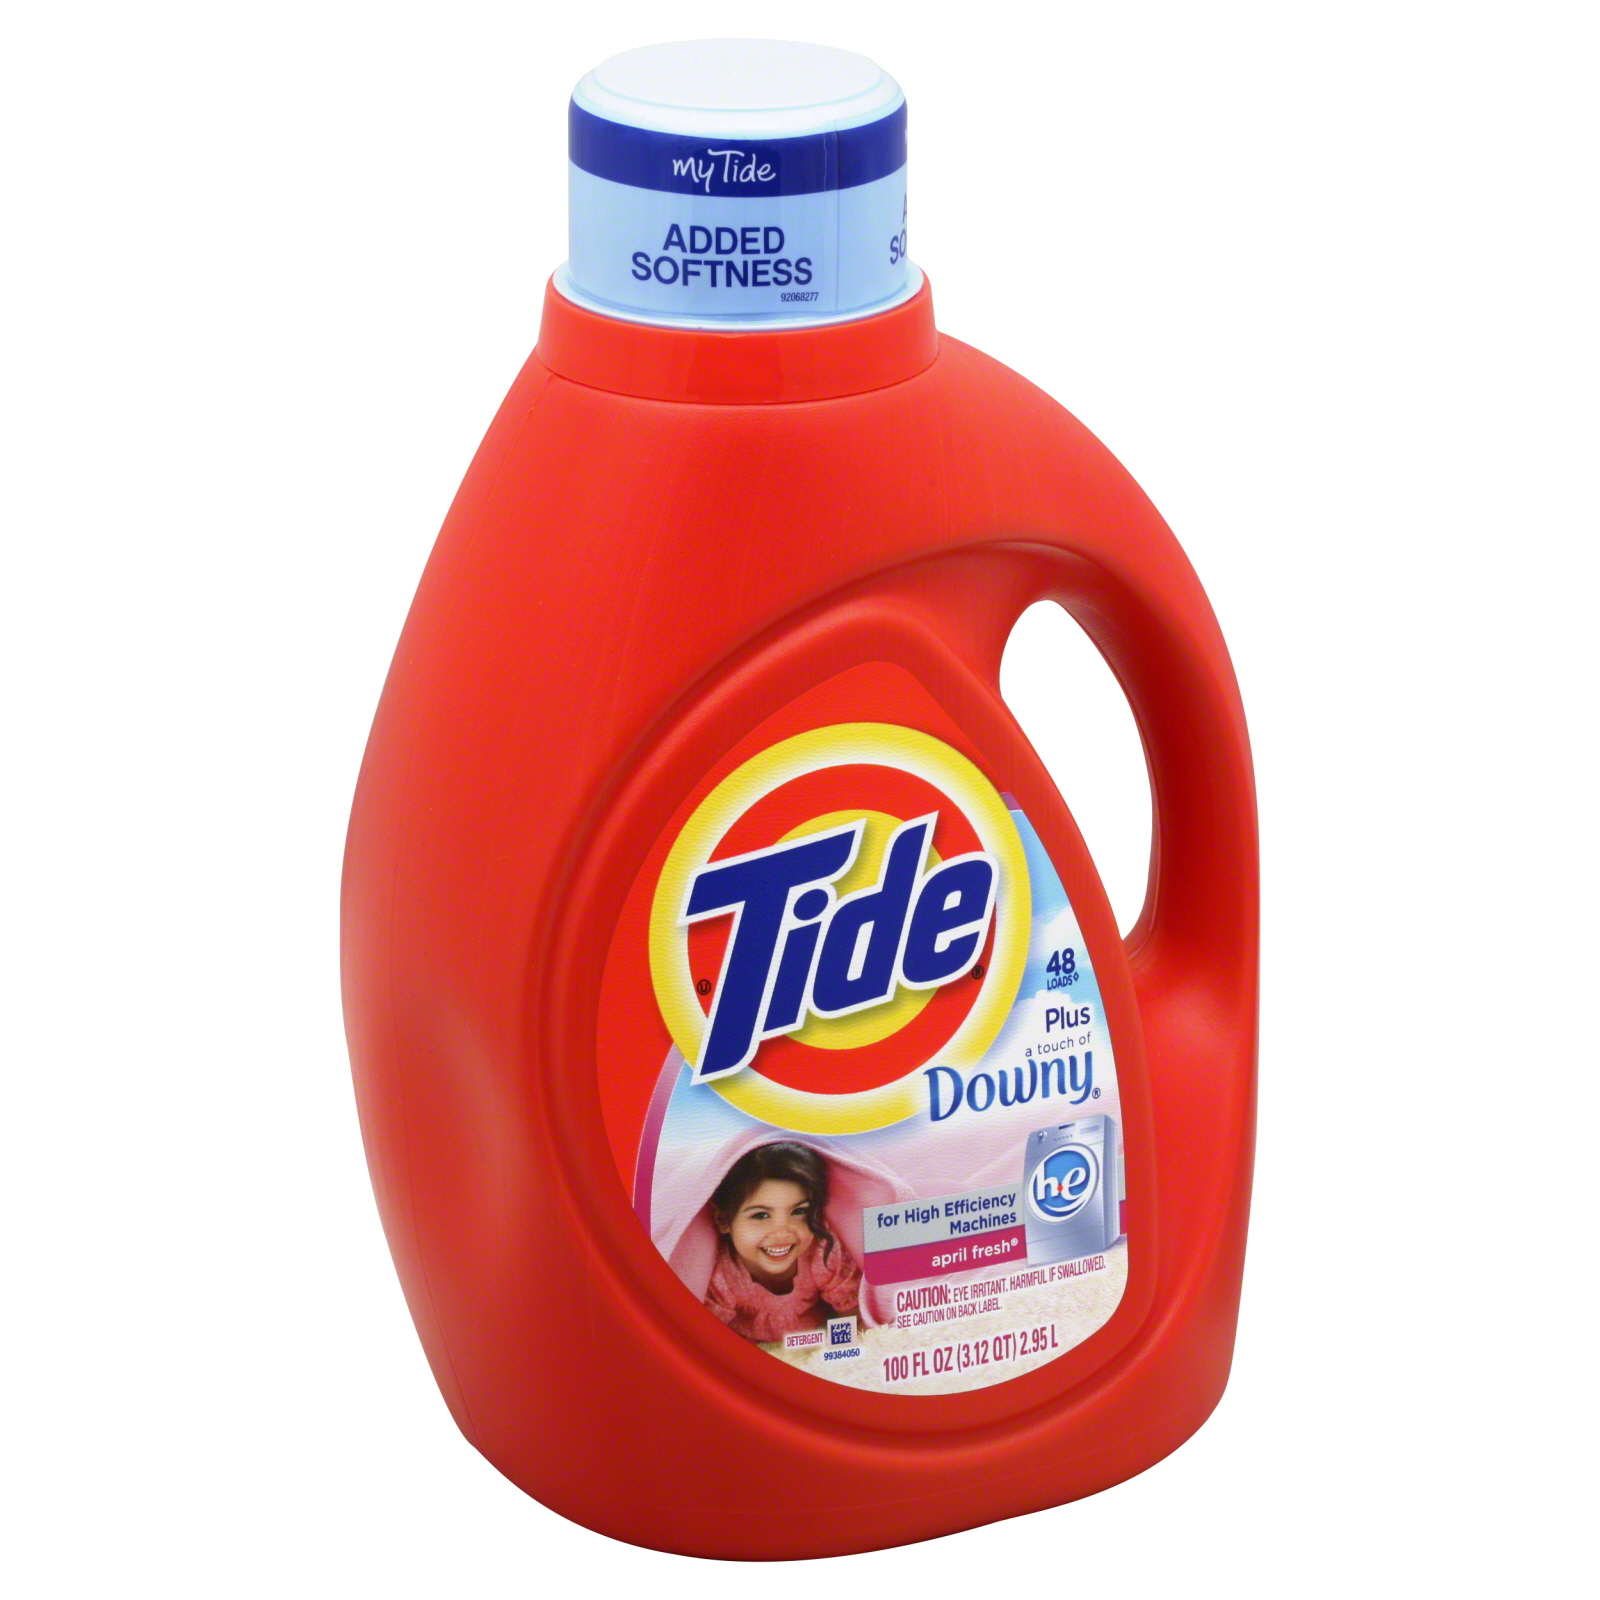 Tide Plus a Touch of Downy Detergent,  HE April Fresh, 100 fl oz (3.12 qt) 2.95 lt